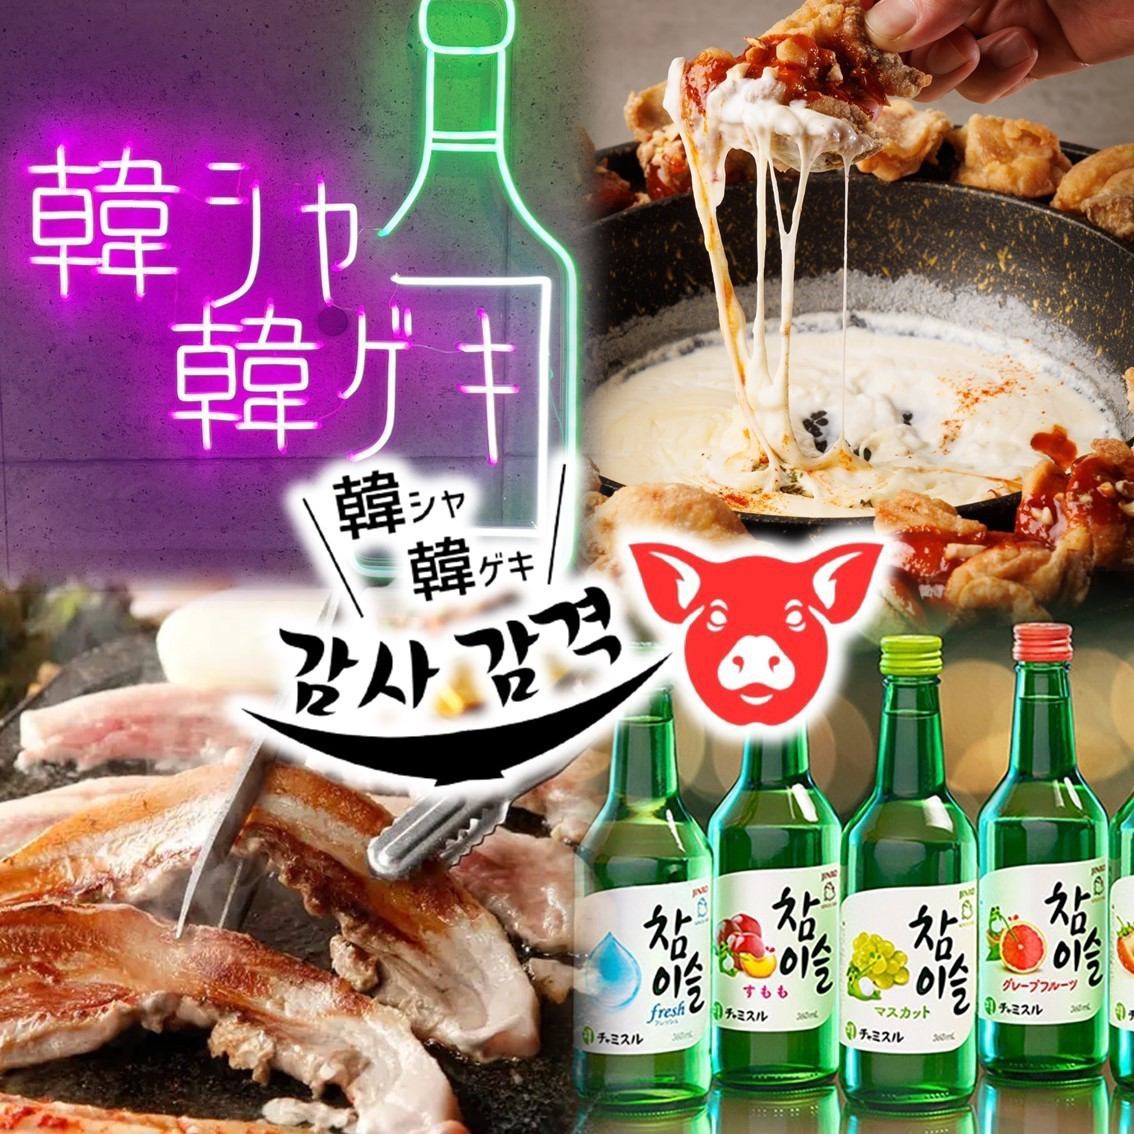 可以享用五花肉、UFO雞等無限量吃喝的韓國居酒屋在薄野開業了☆